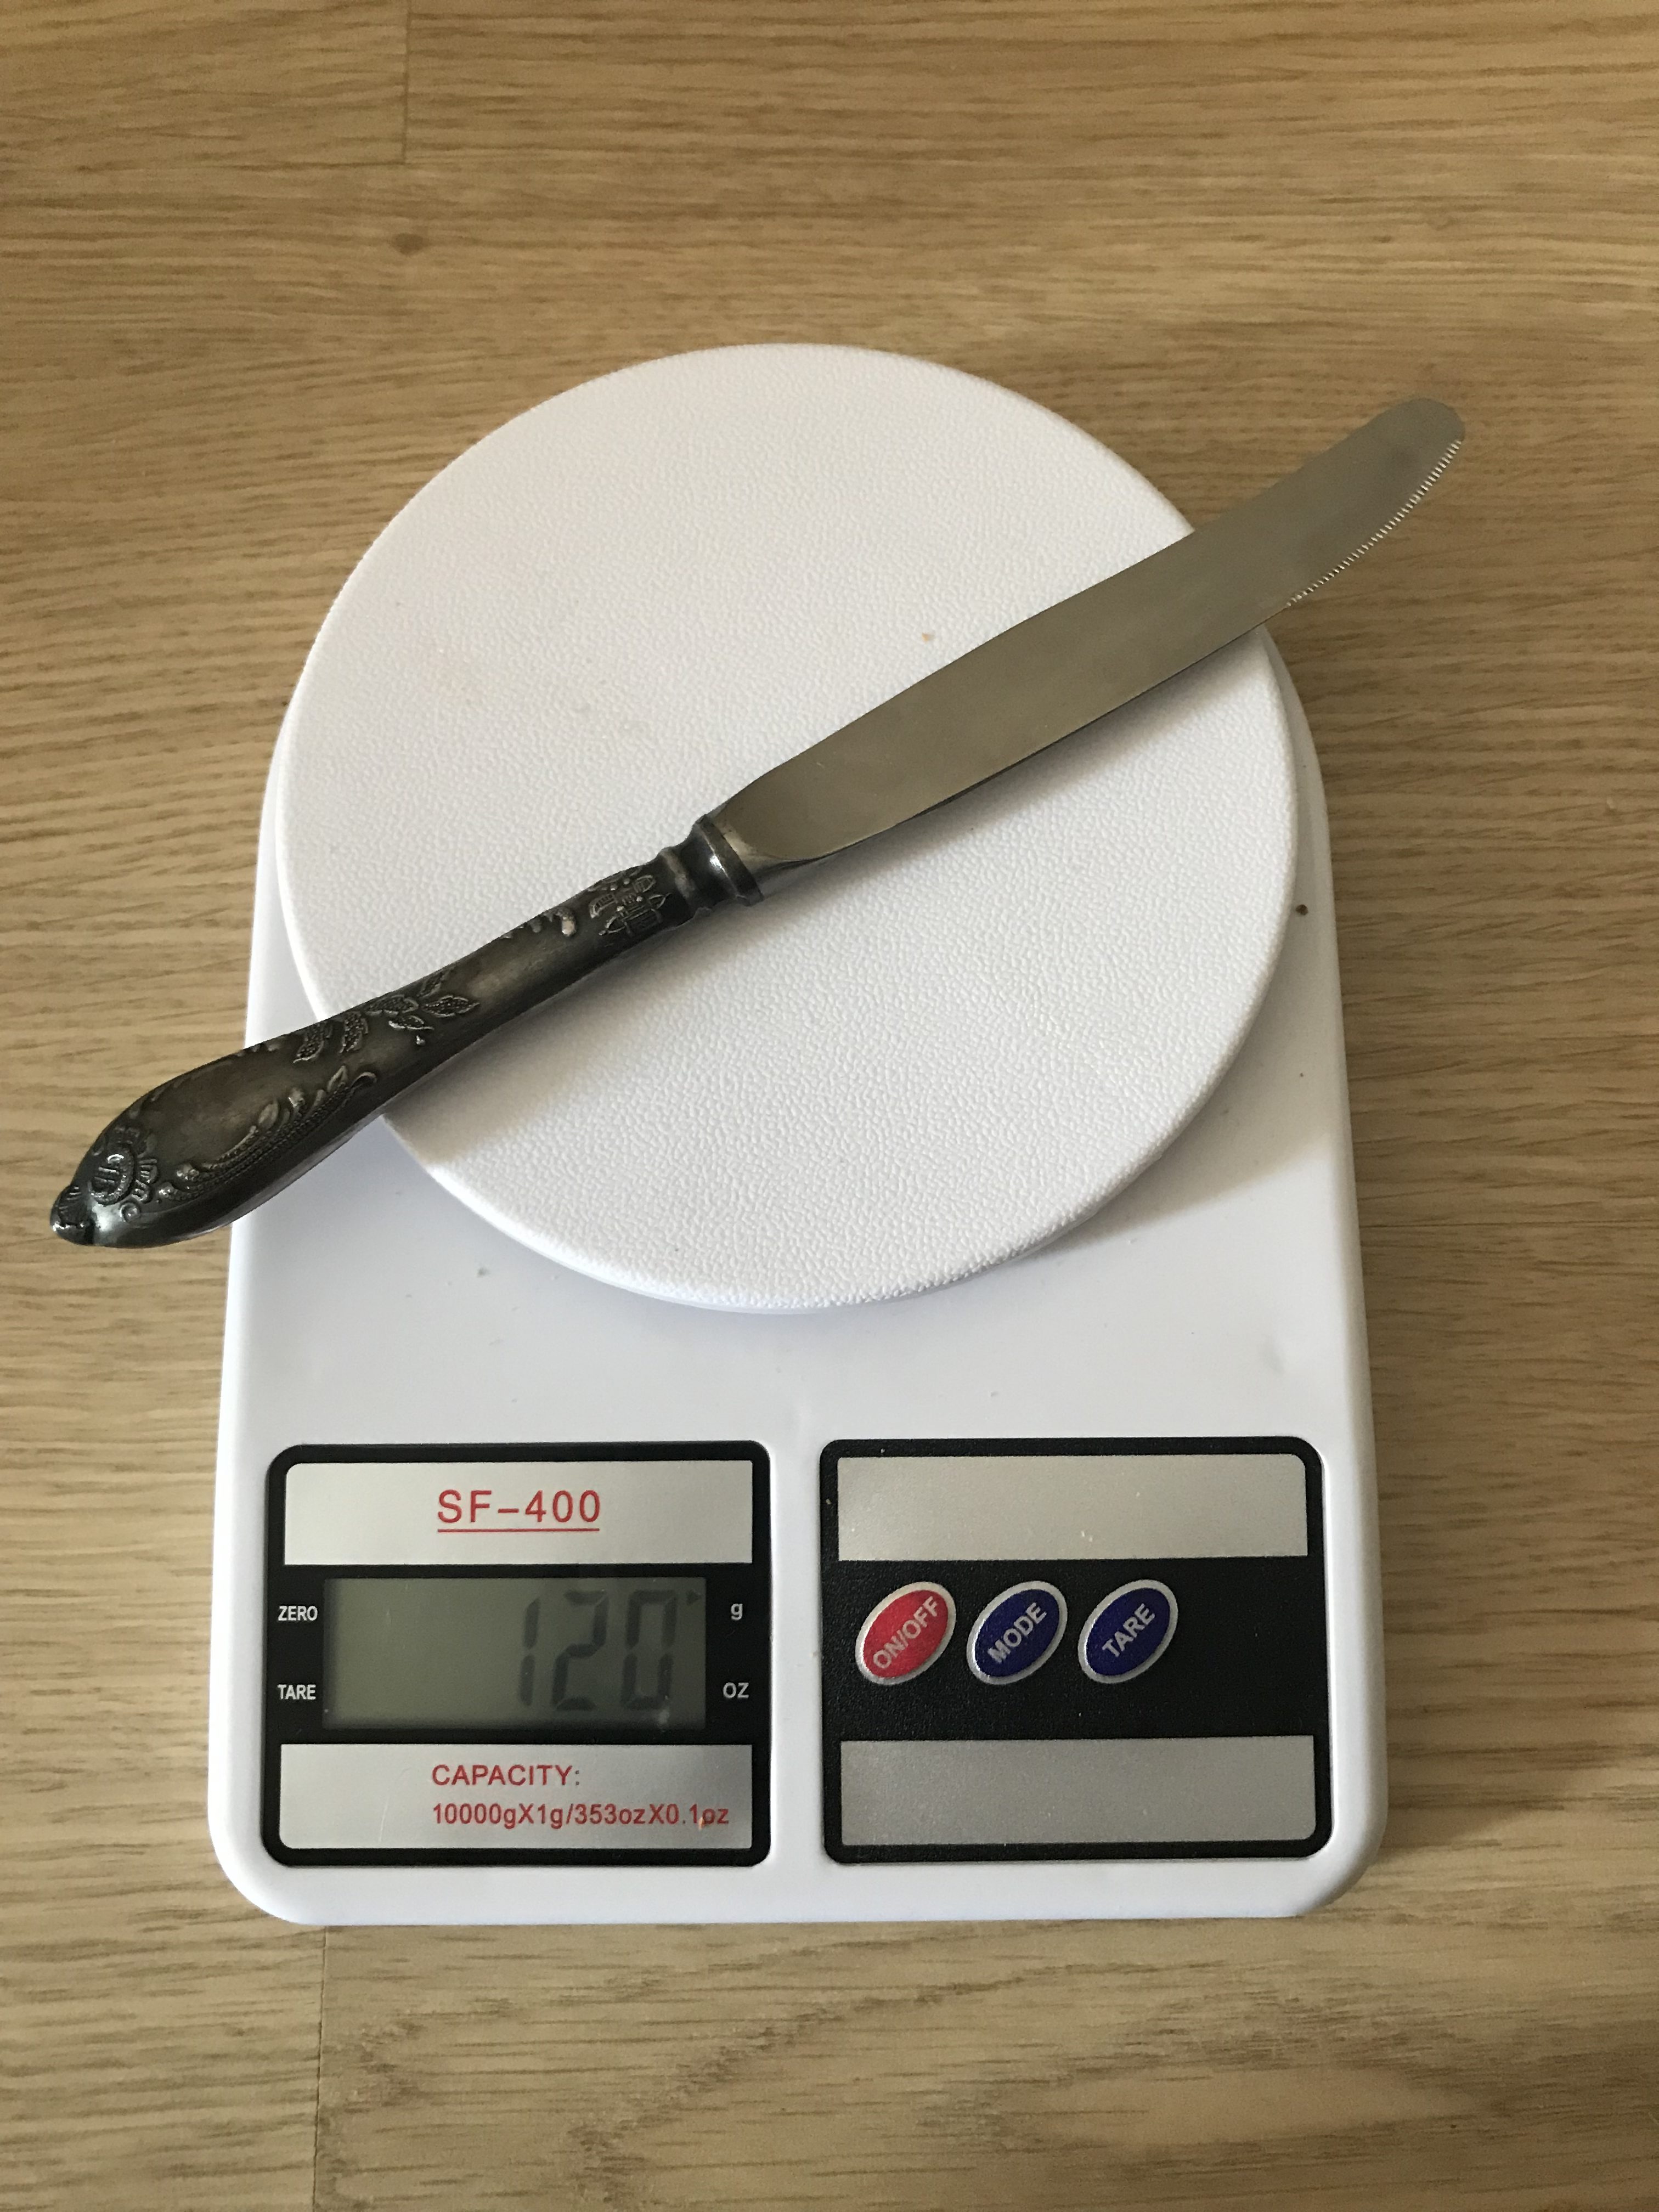 Bir sofra bıçağının ağırlığı ne kadardır?